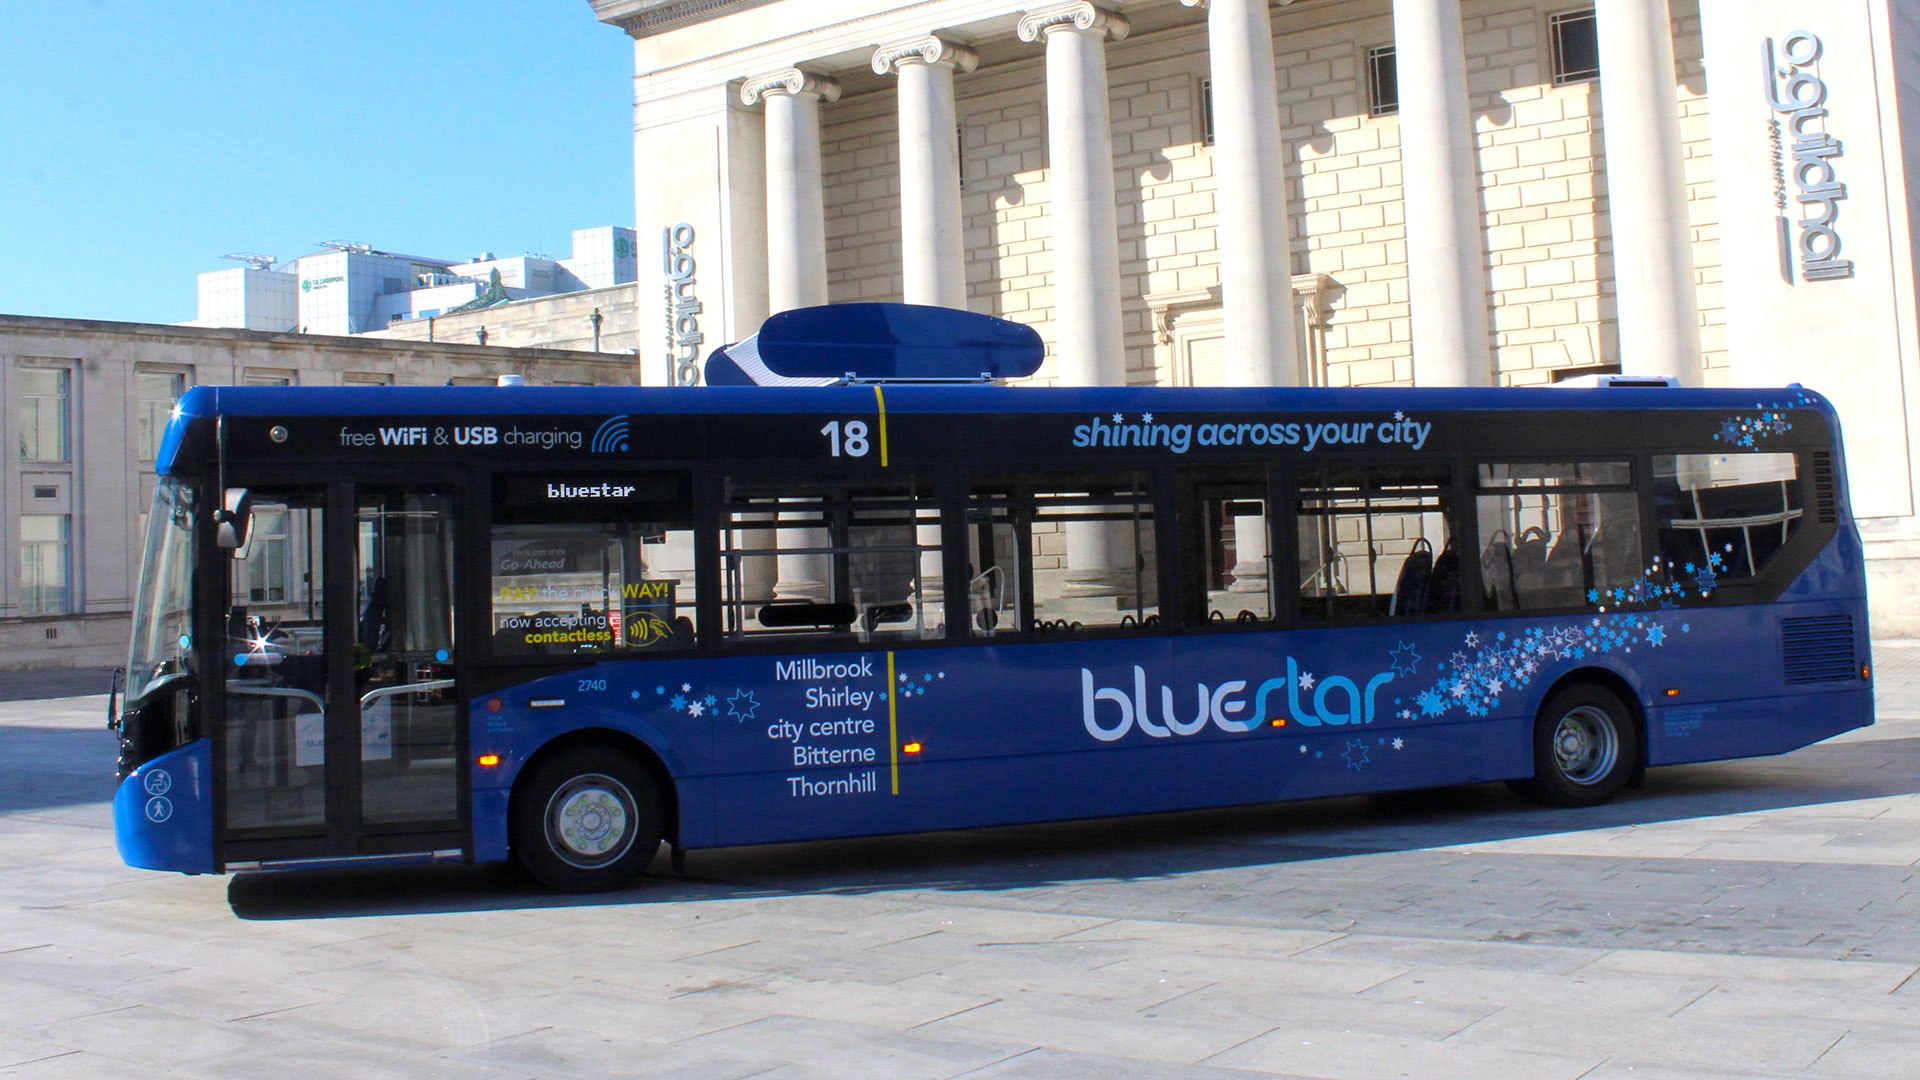 Автобус-фильтр из Саутгемптона — первый шаг к более чистым городам - 6